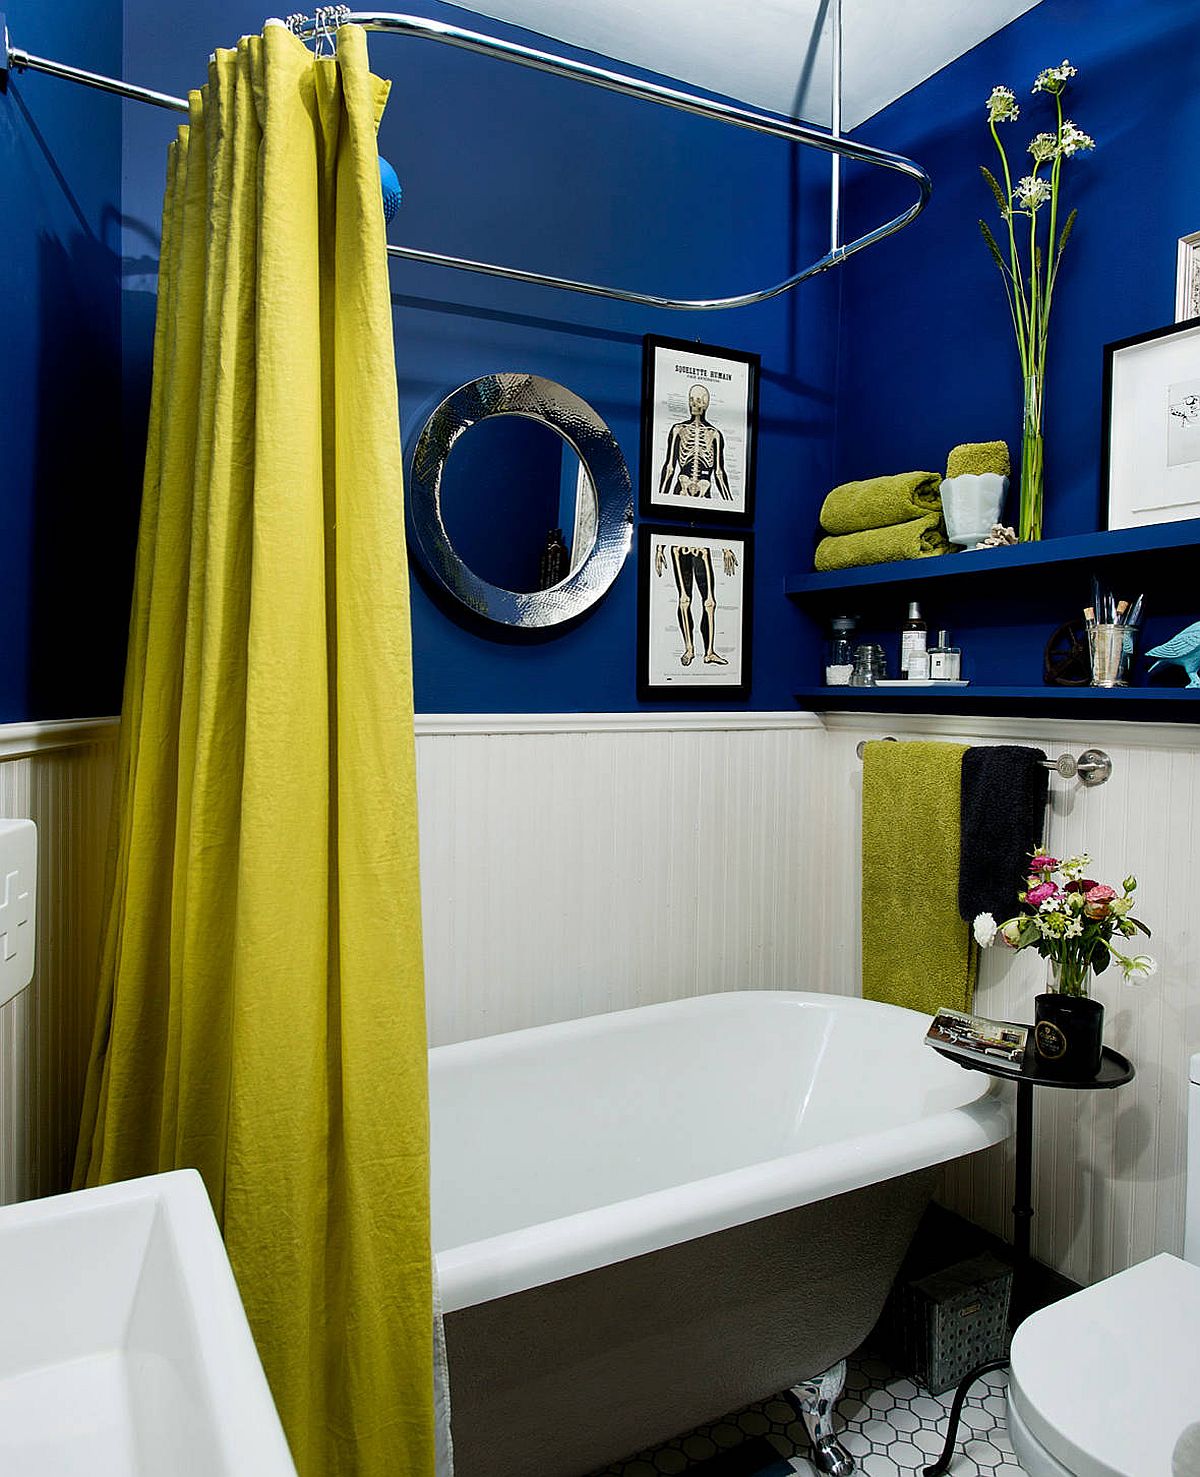 hình ảnh phòng tắm nhỏ với mảng tường sơn xanh đậm, bồn tắm màu trắng, rèm cửa và khăn màu vàng nổi bật